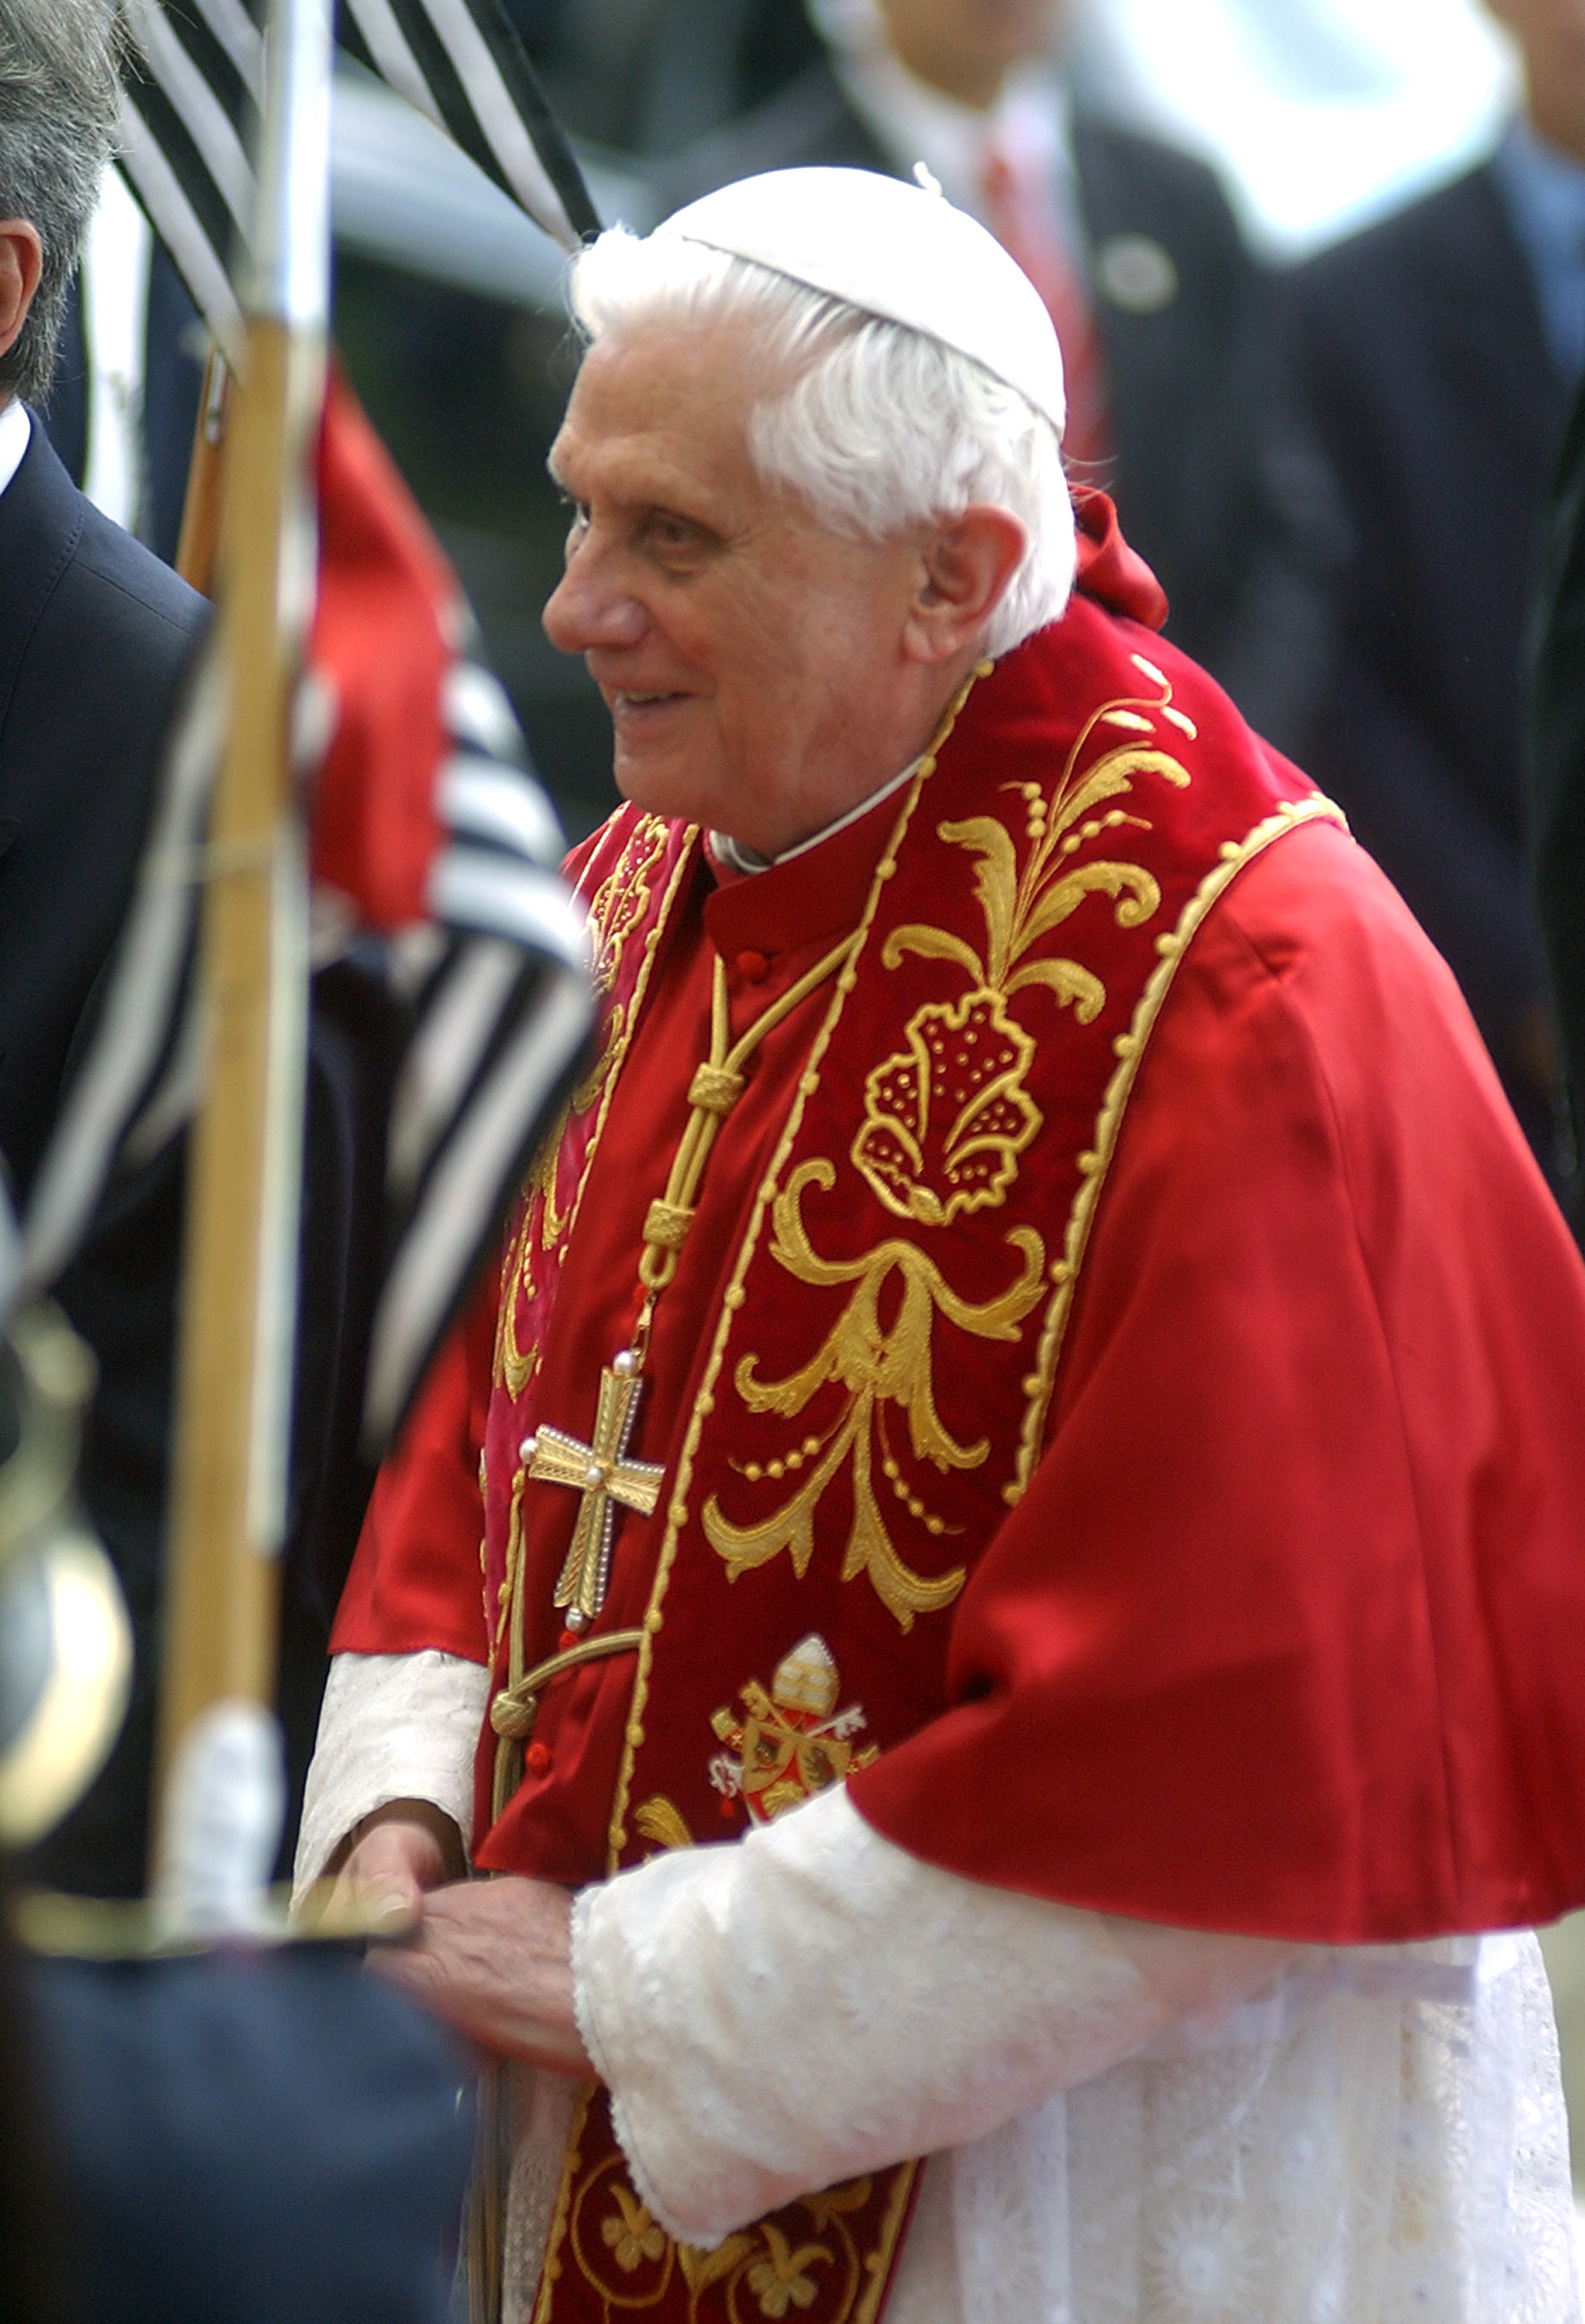 Paavi Benedictus XVI kuva Wikimedia